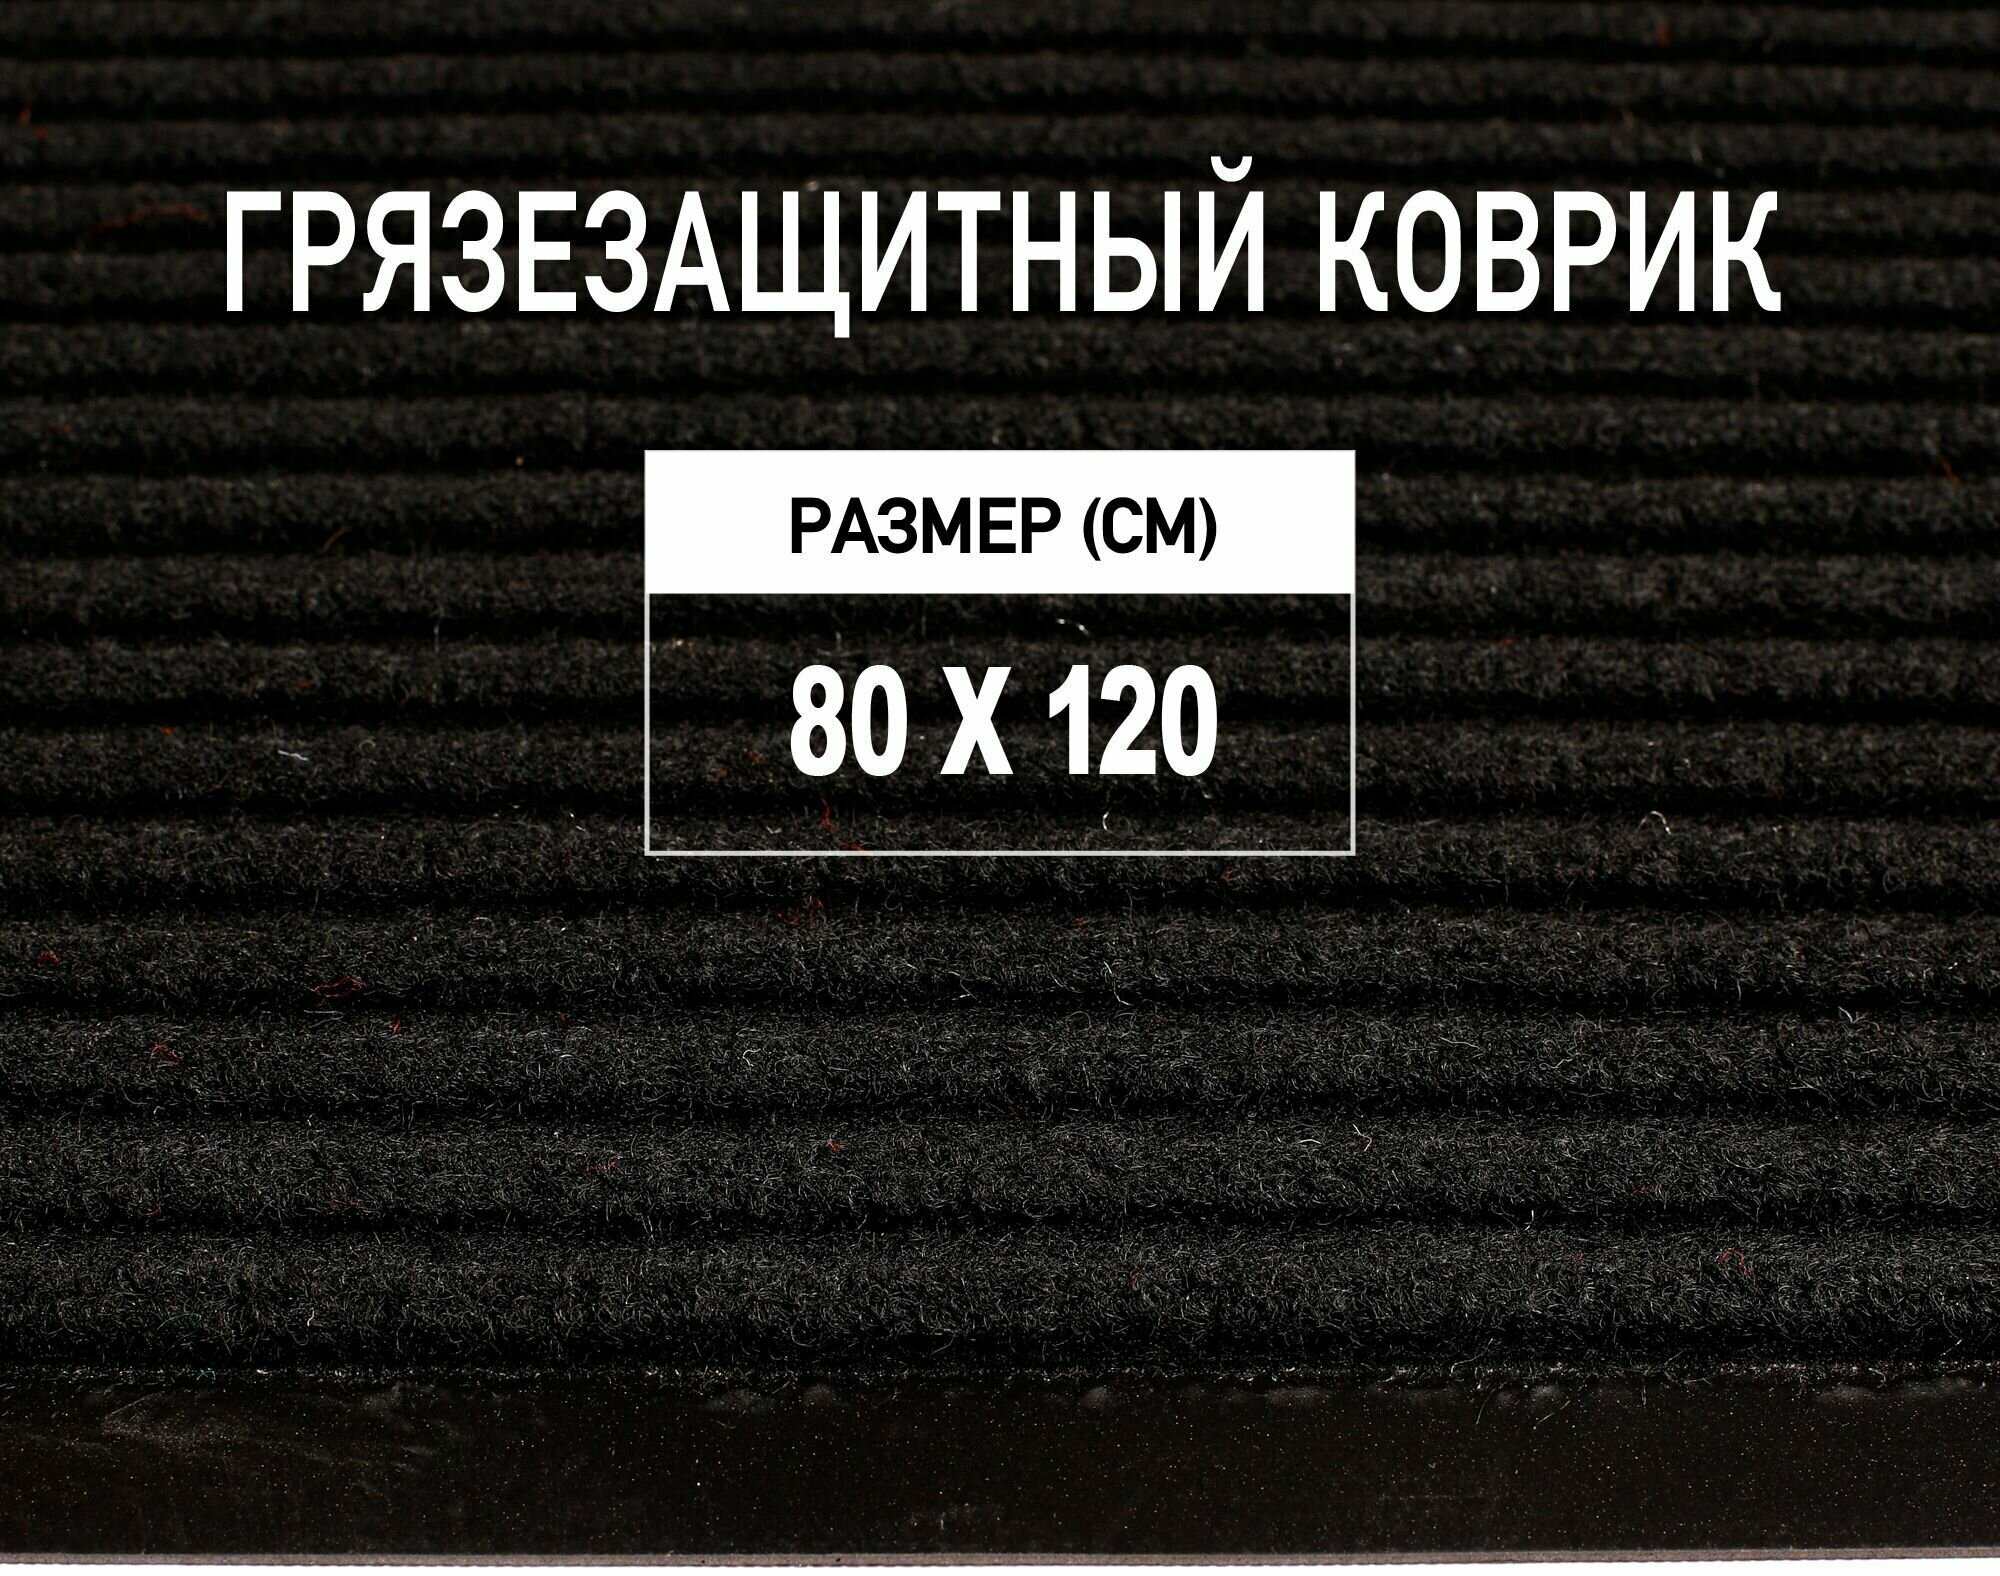 Коврик придверный 80х120 см Premium Grass грязезащитный, черный. Коврик в прихожую. 4813581-80х120